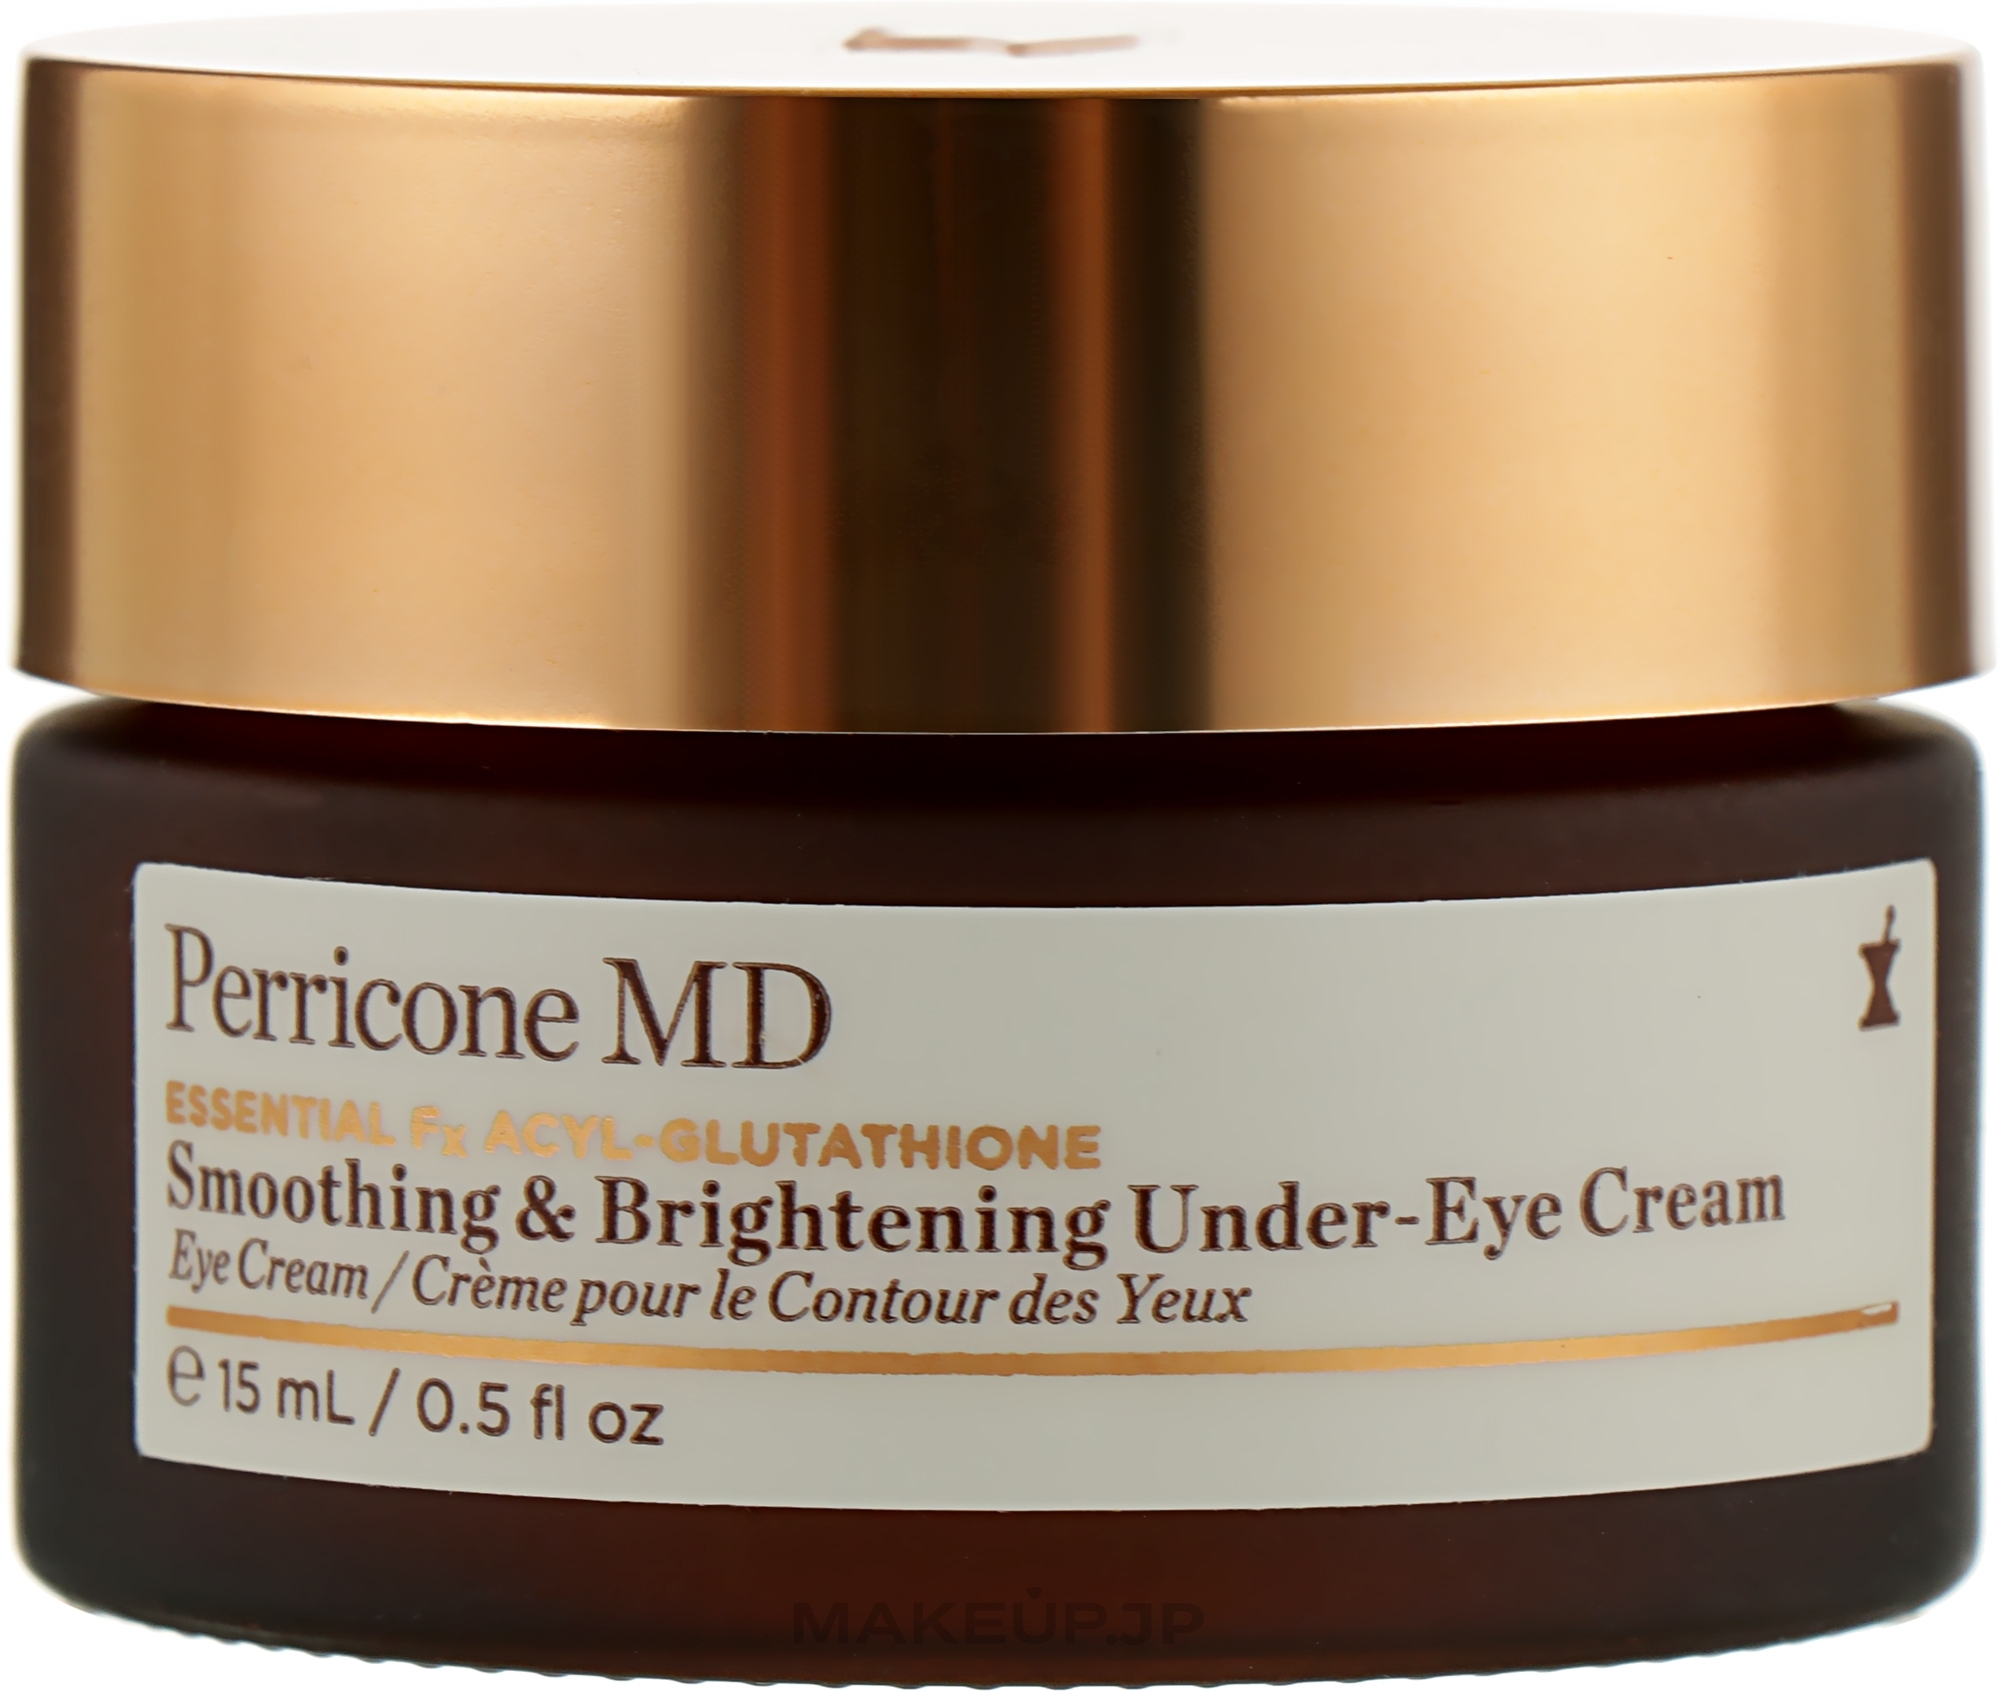 Firming Eye Cream - Perricone MD Essential Fx Acyl-Glutathione Smoothing & Brightening Under-Eye Cream — photo 15 ml